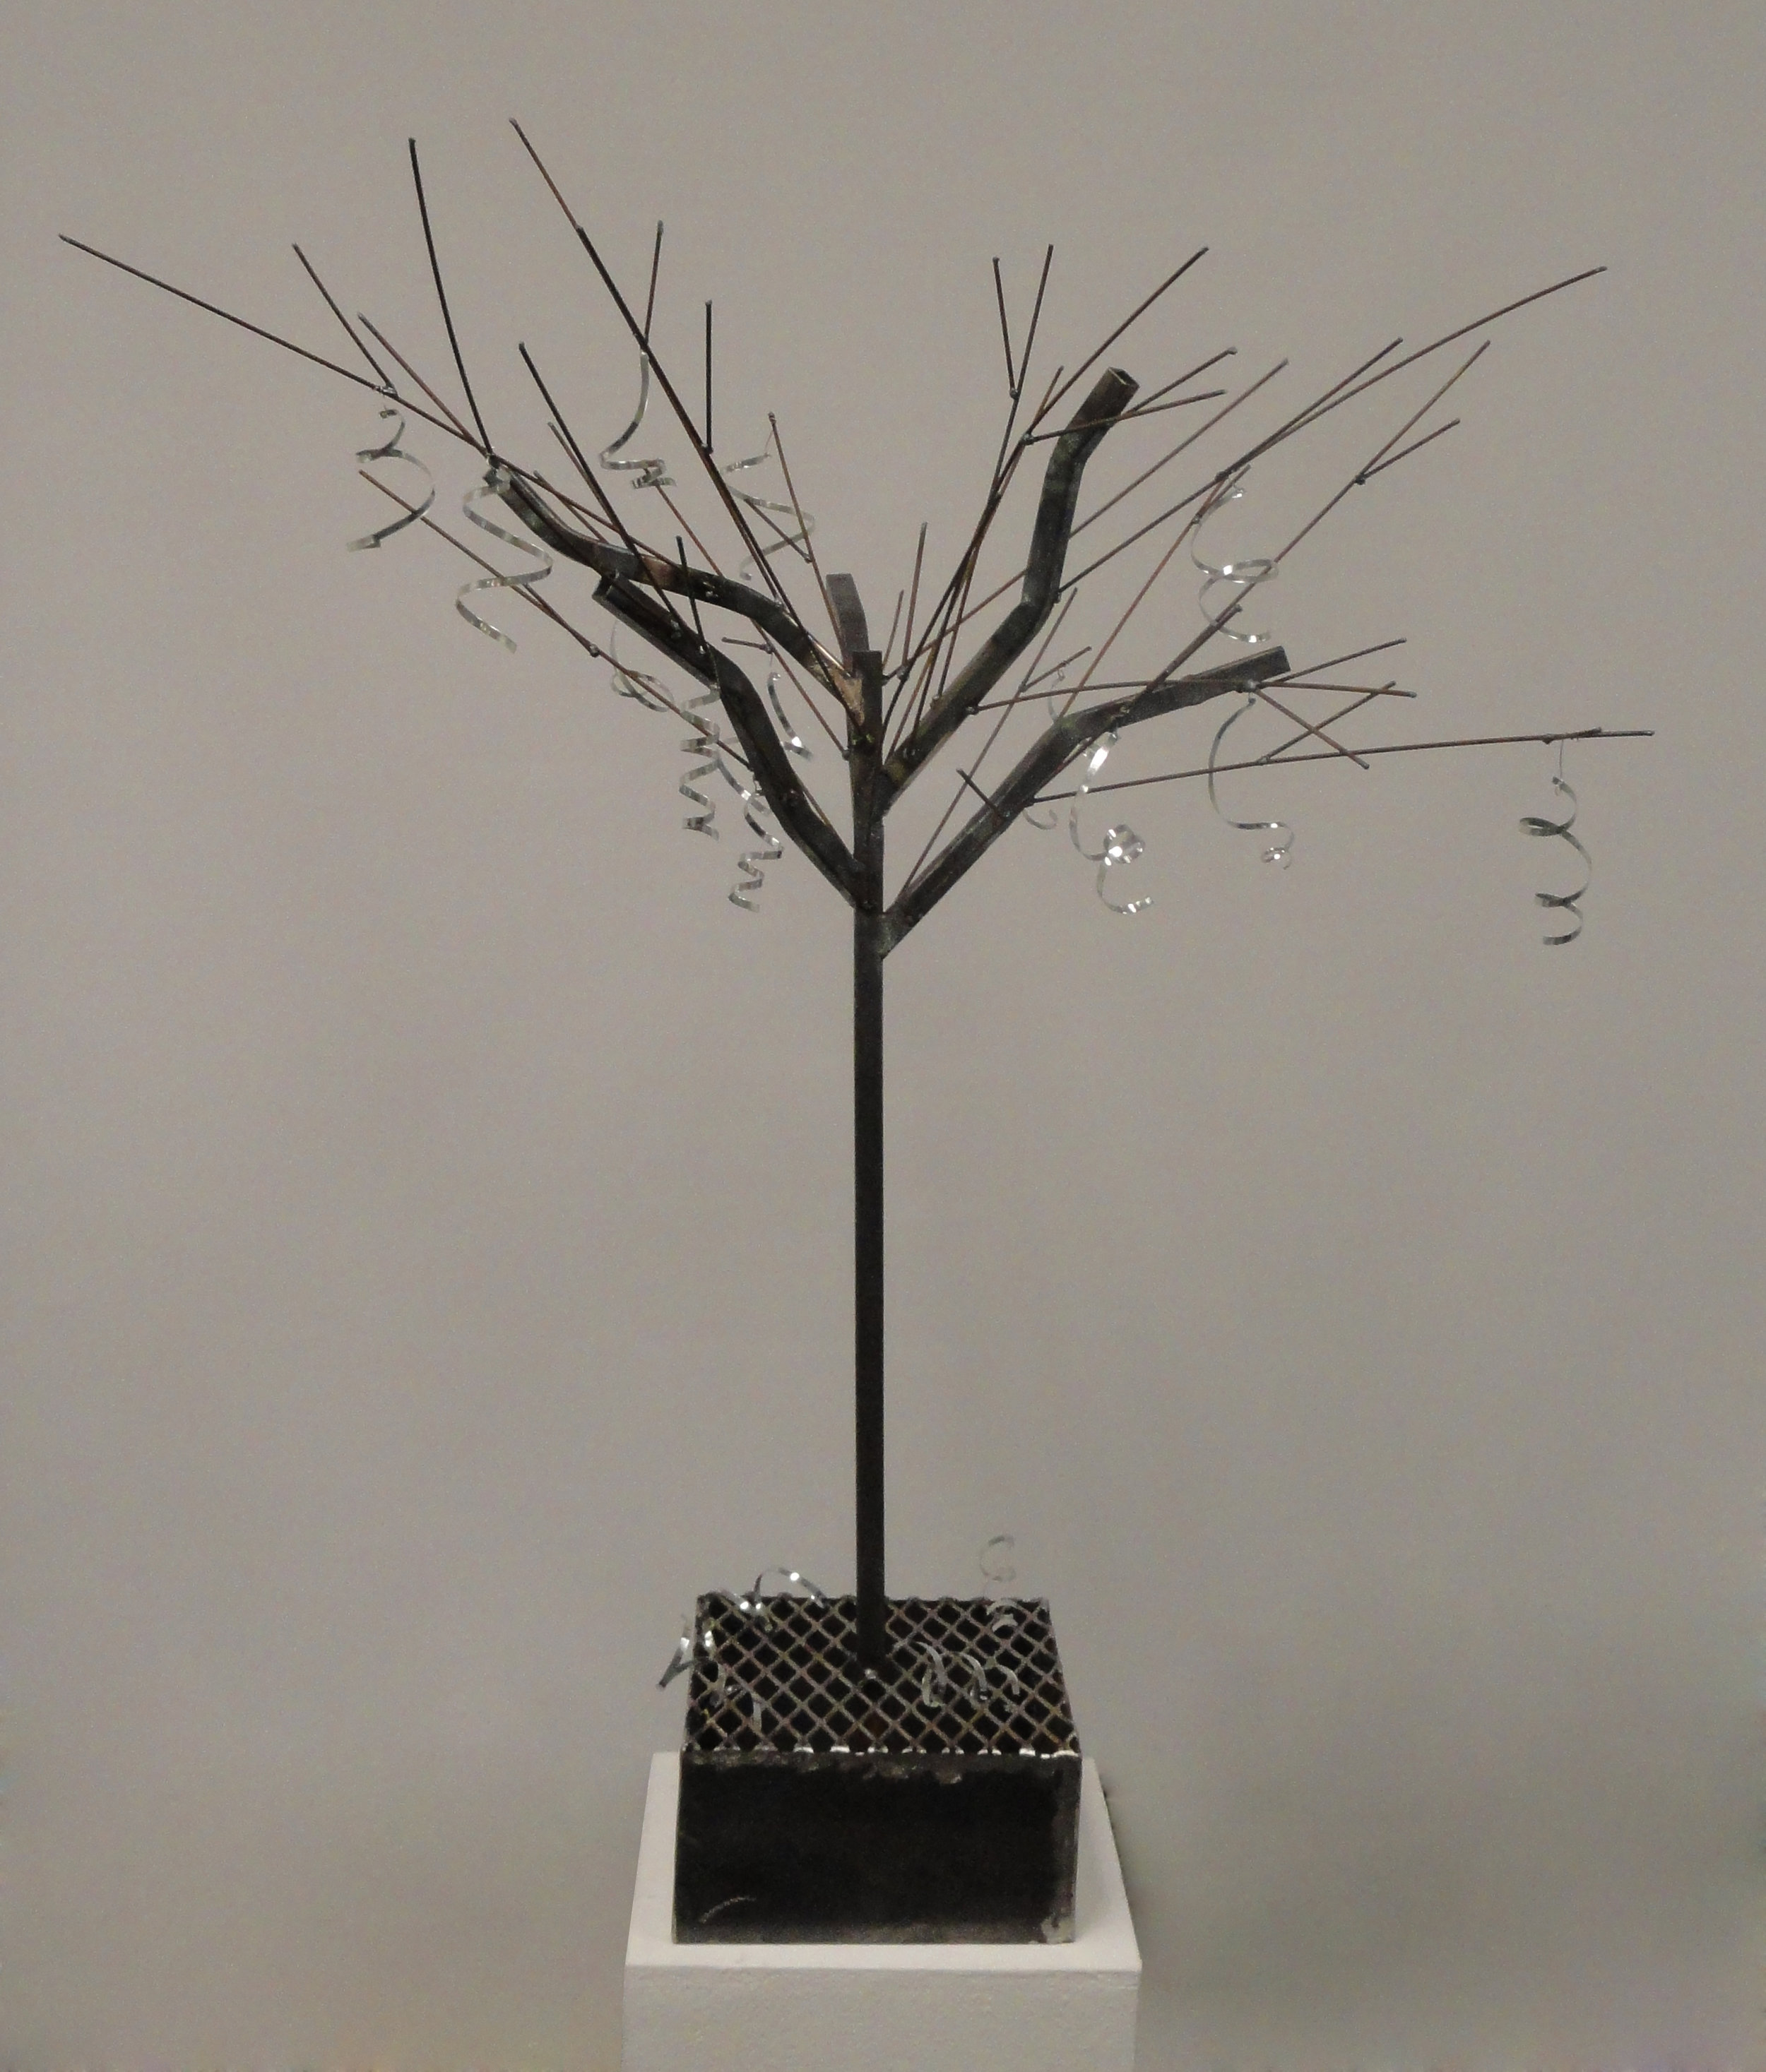  Organic Forms Project  Sculptural Processes&nbsp;  34” x 38” x 34”  steel, aluminum  2014 